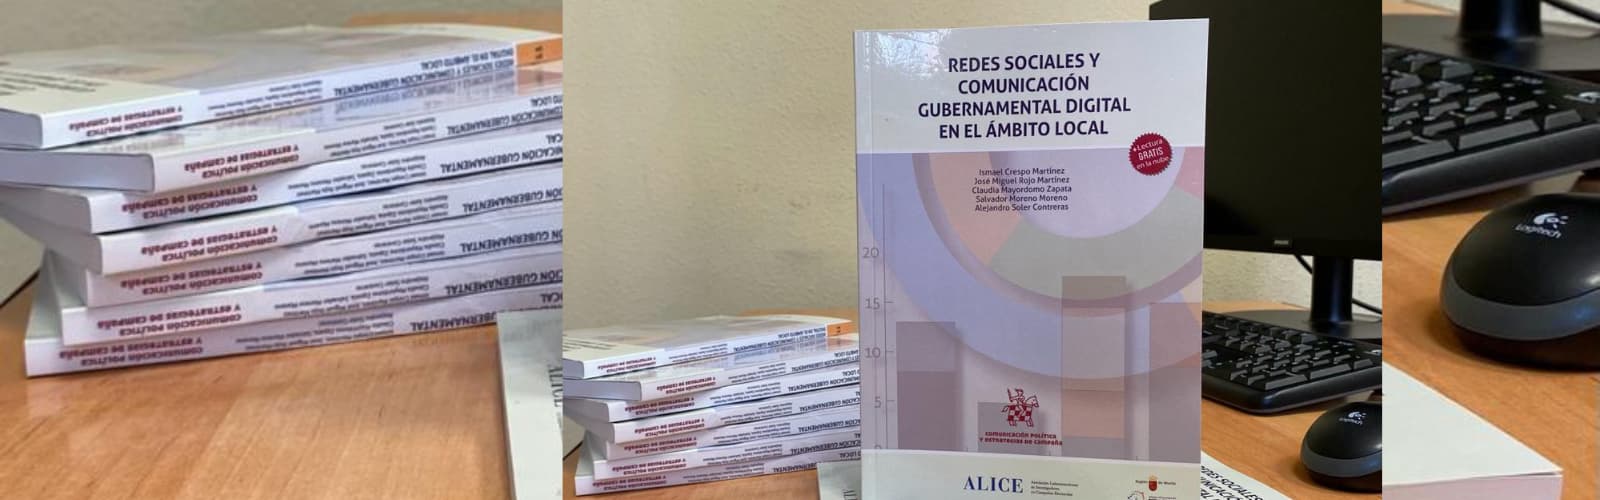 Manual para la gestión de las redes sociales municipales, una guia elaborada por los investigadores de la UMU para mejorar la comunicación gubernamental